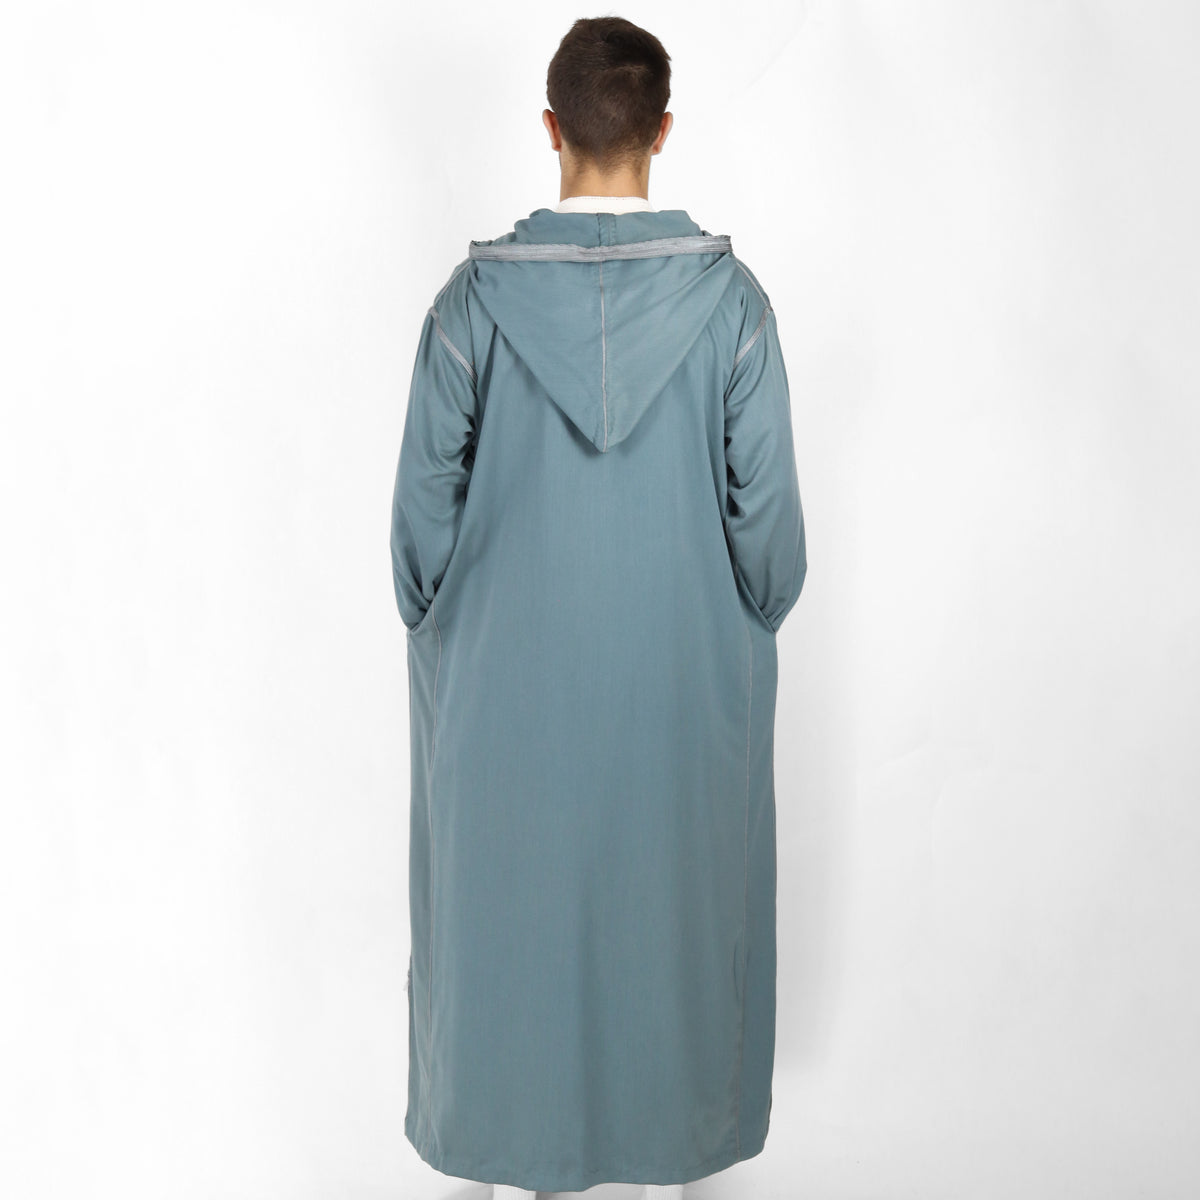 Ethereal Elegance Long Sleeve Hooded Djellaba Thobes